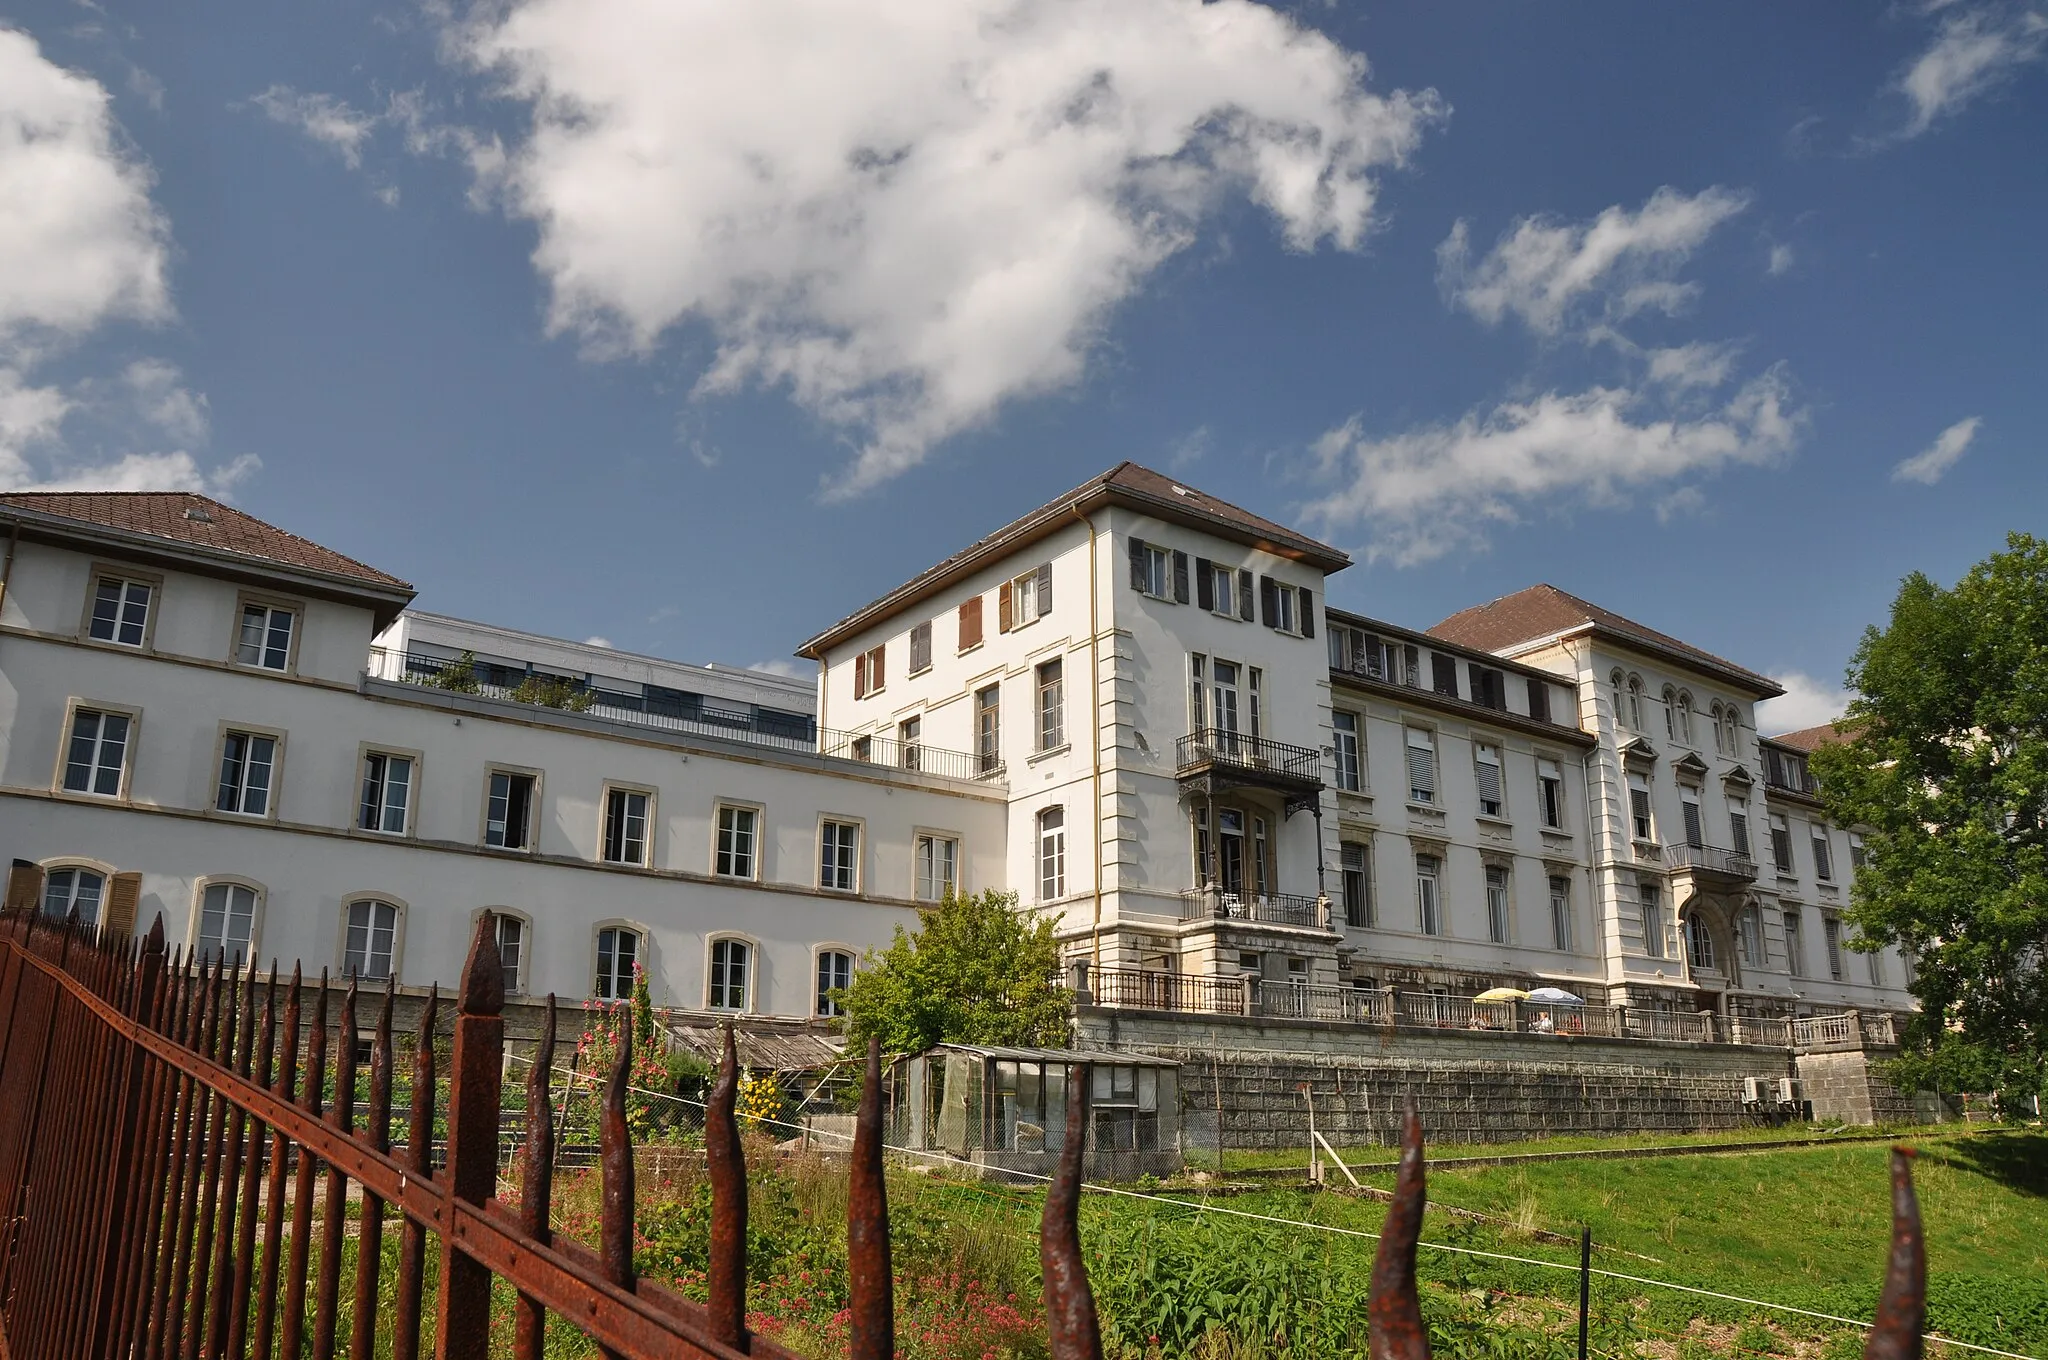 Photo showing: The Domaine de Arbres (Hospital) in the town of La Chaux de Fonds